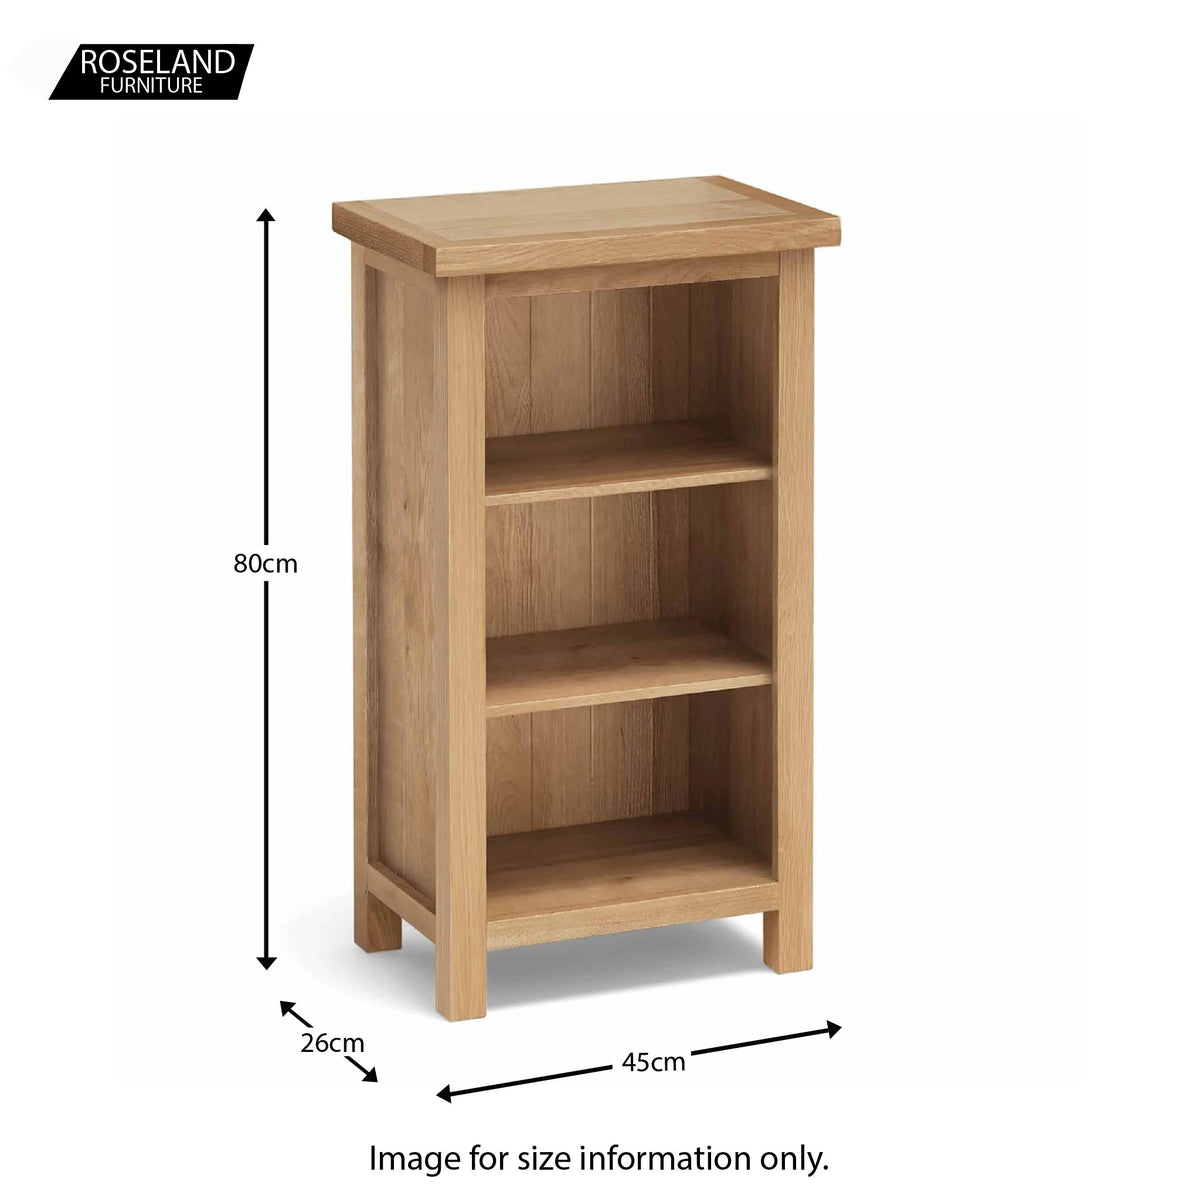 Light oak small bookcase - Size guide